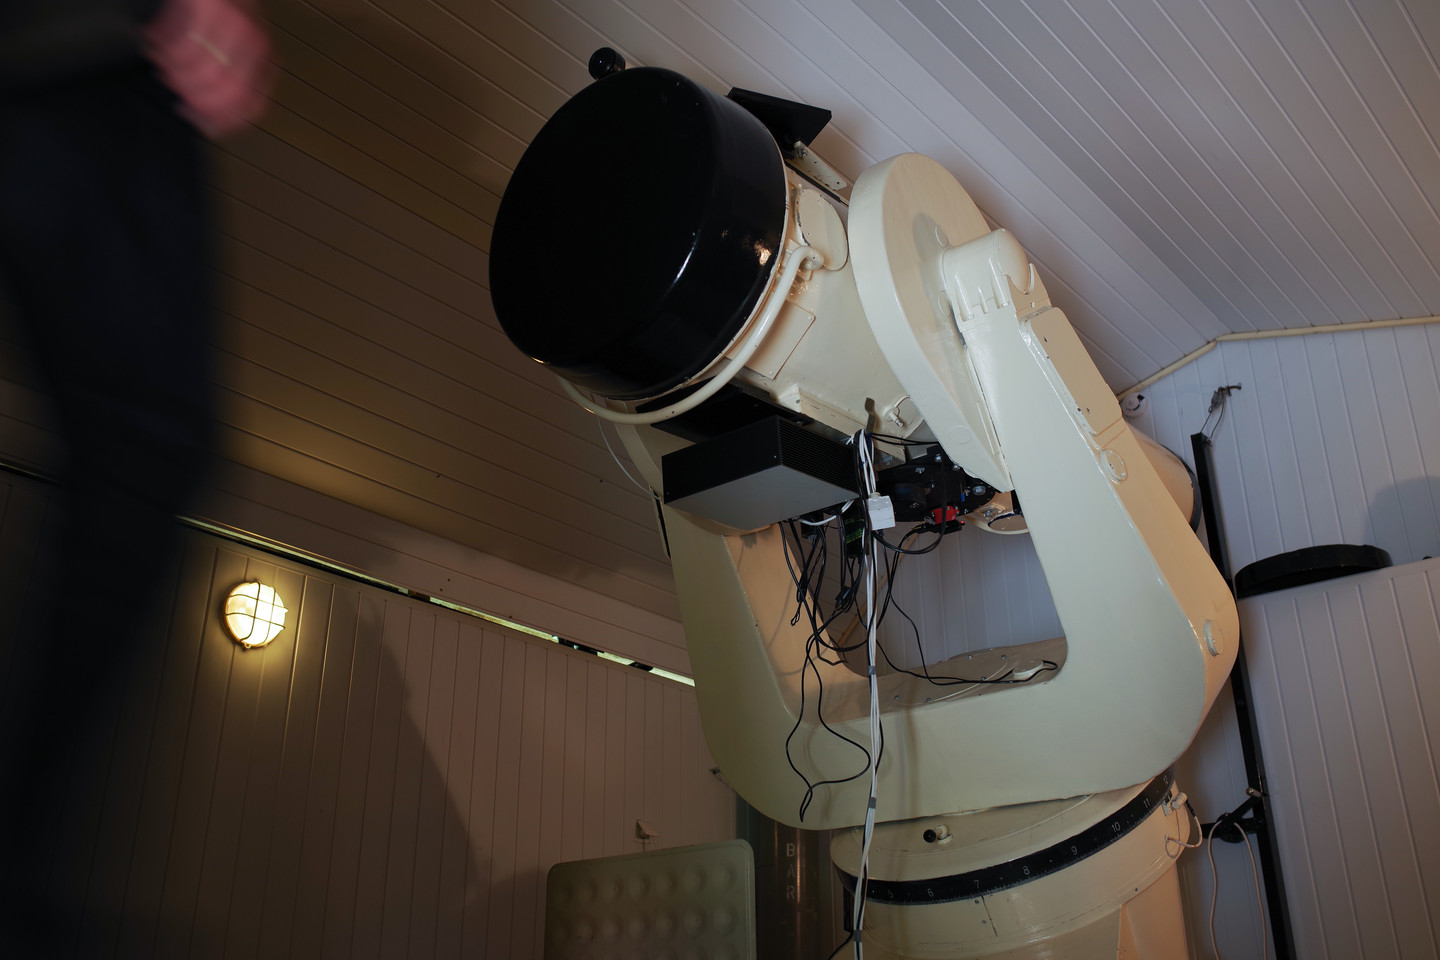  51 cm skersmens Maksutovo sistemos fotografinis teleskopas.<br> V. Ščiavinsko nuotr.